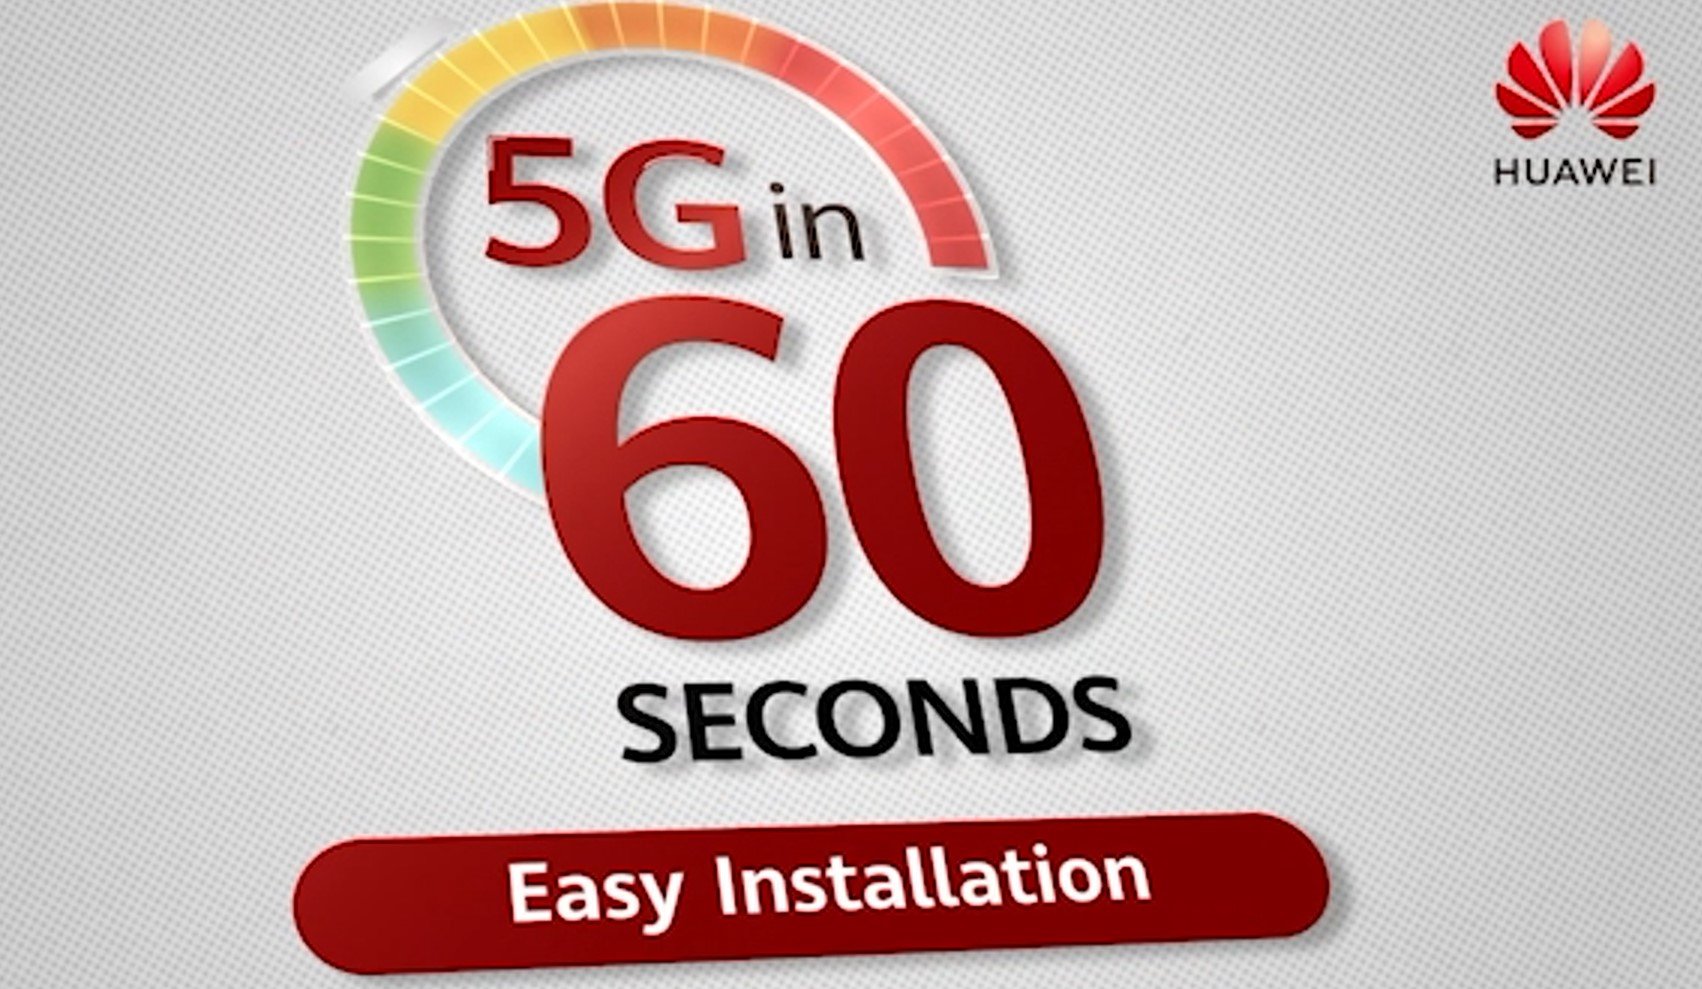 VIDEO Avantajele tehnologiei 5G în instalarea de echipamente pentru comunicații explicate în 60 de secunde de specialiștii Huawei